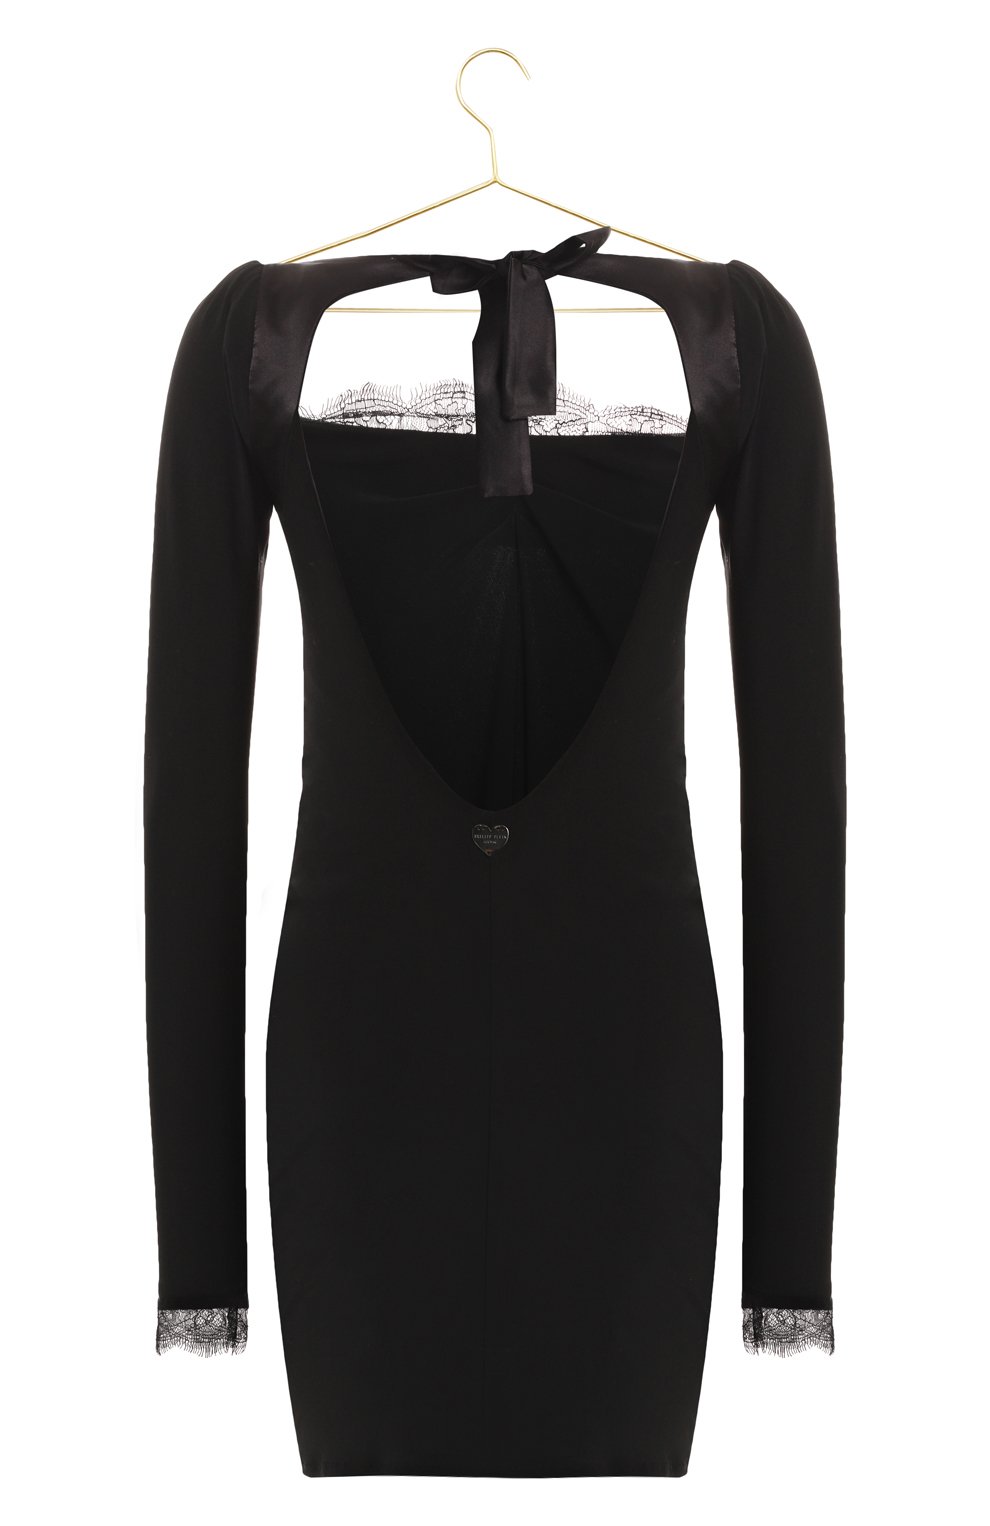 Платье из вискозы | Philipp Plein | Чёрный - 2